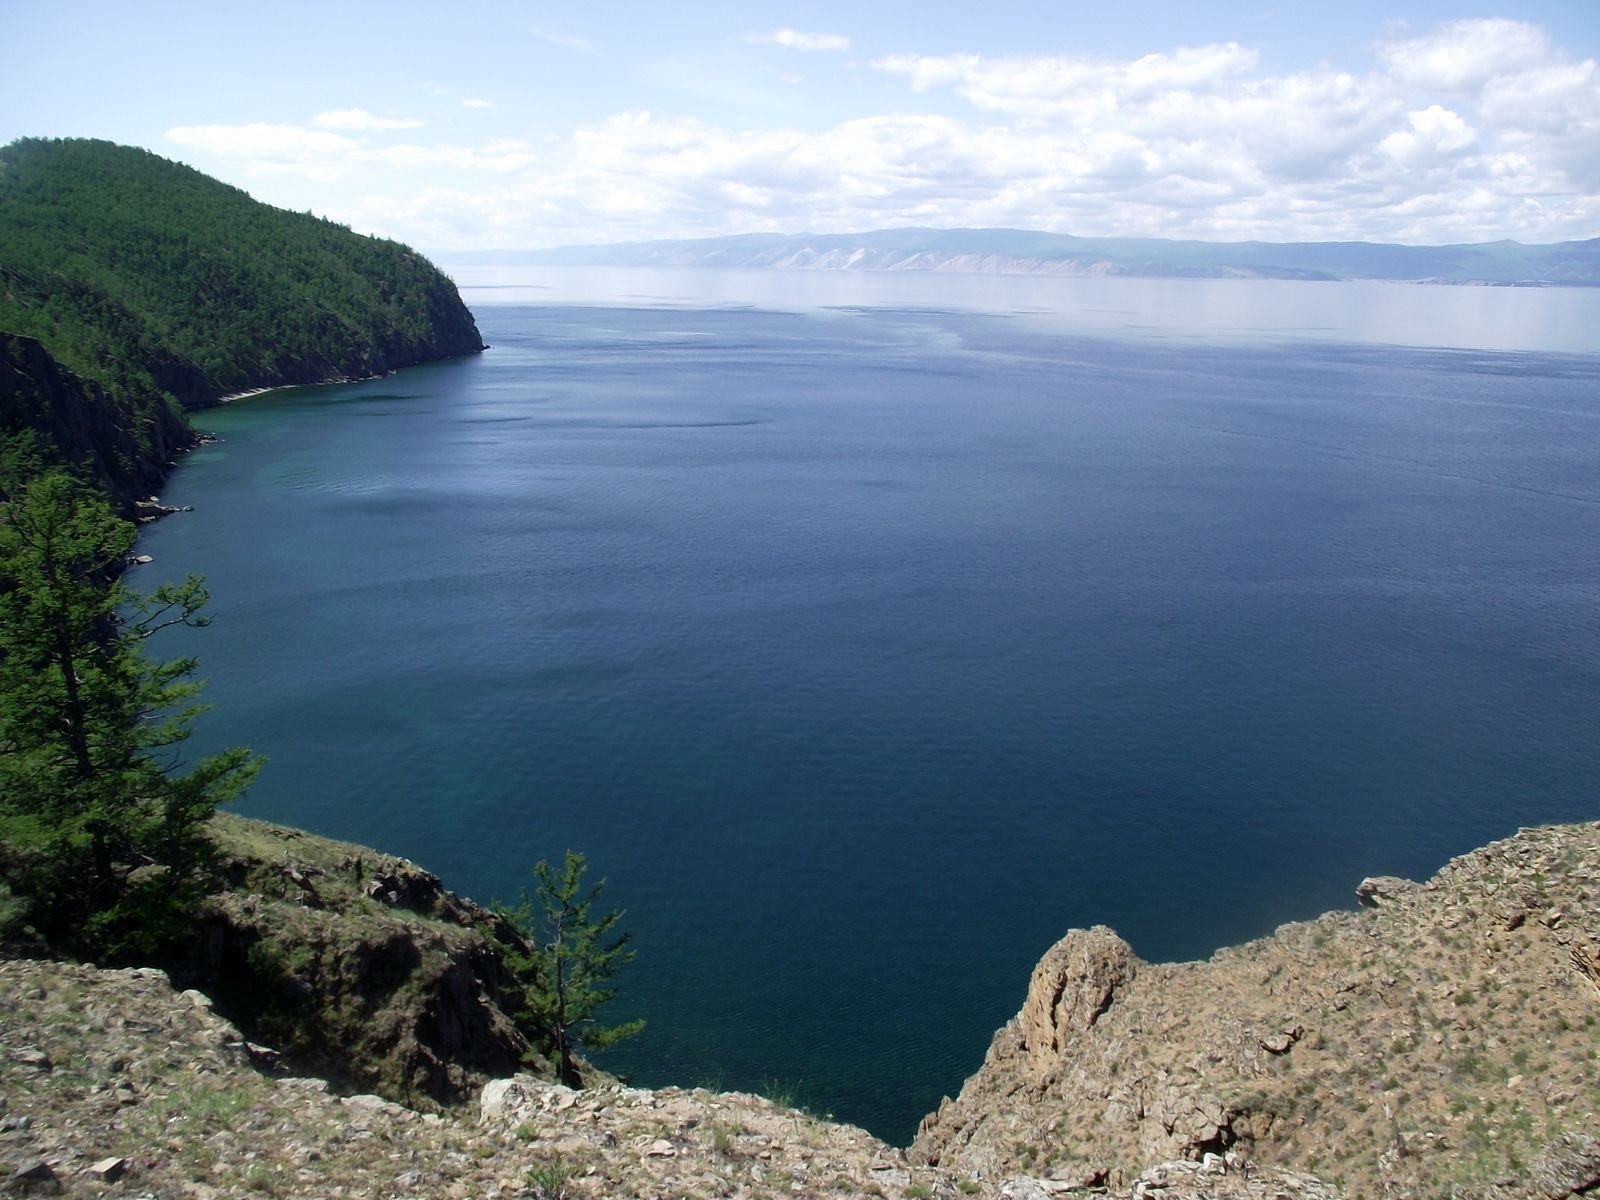 Котловина больших озер. Байкал пресноводное озеро. Озерная котловина Байкала. Озеро Байкал и Танганьика. Озеро Байкал. Байкал- озеро тиктаничеакого происхро.